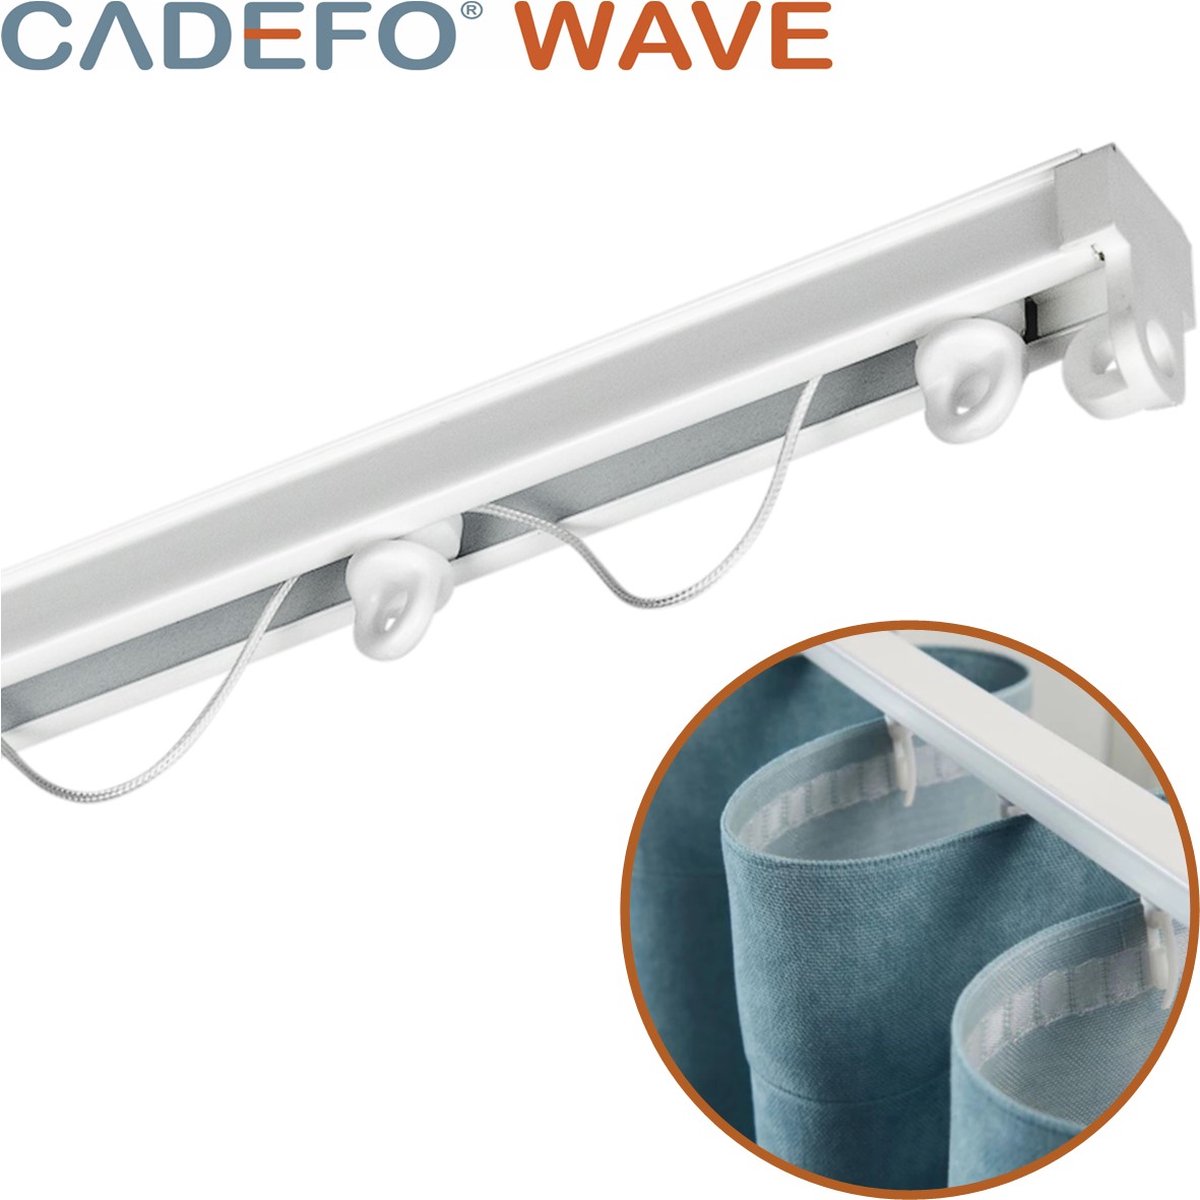 CADEFO WAVE (551 - 600 cm) Gordijnrails - Compleet op maat! - UIT 1 STUK - Leverbaar tot 6 meter - Plafondbevestiging - Lengte 562 cm